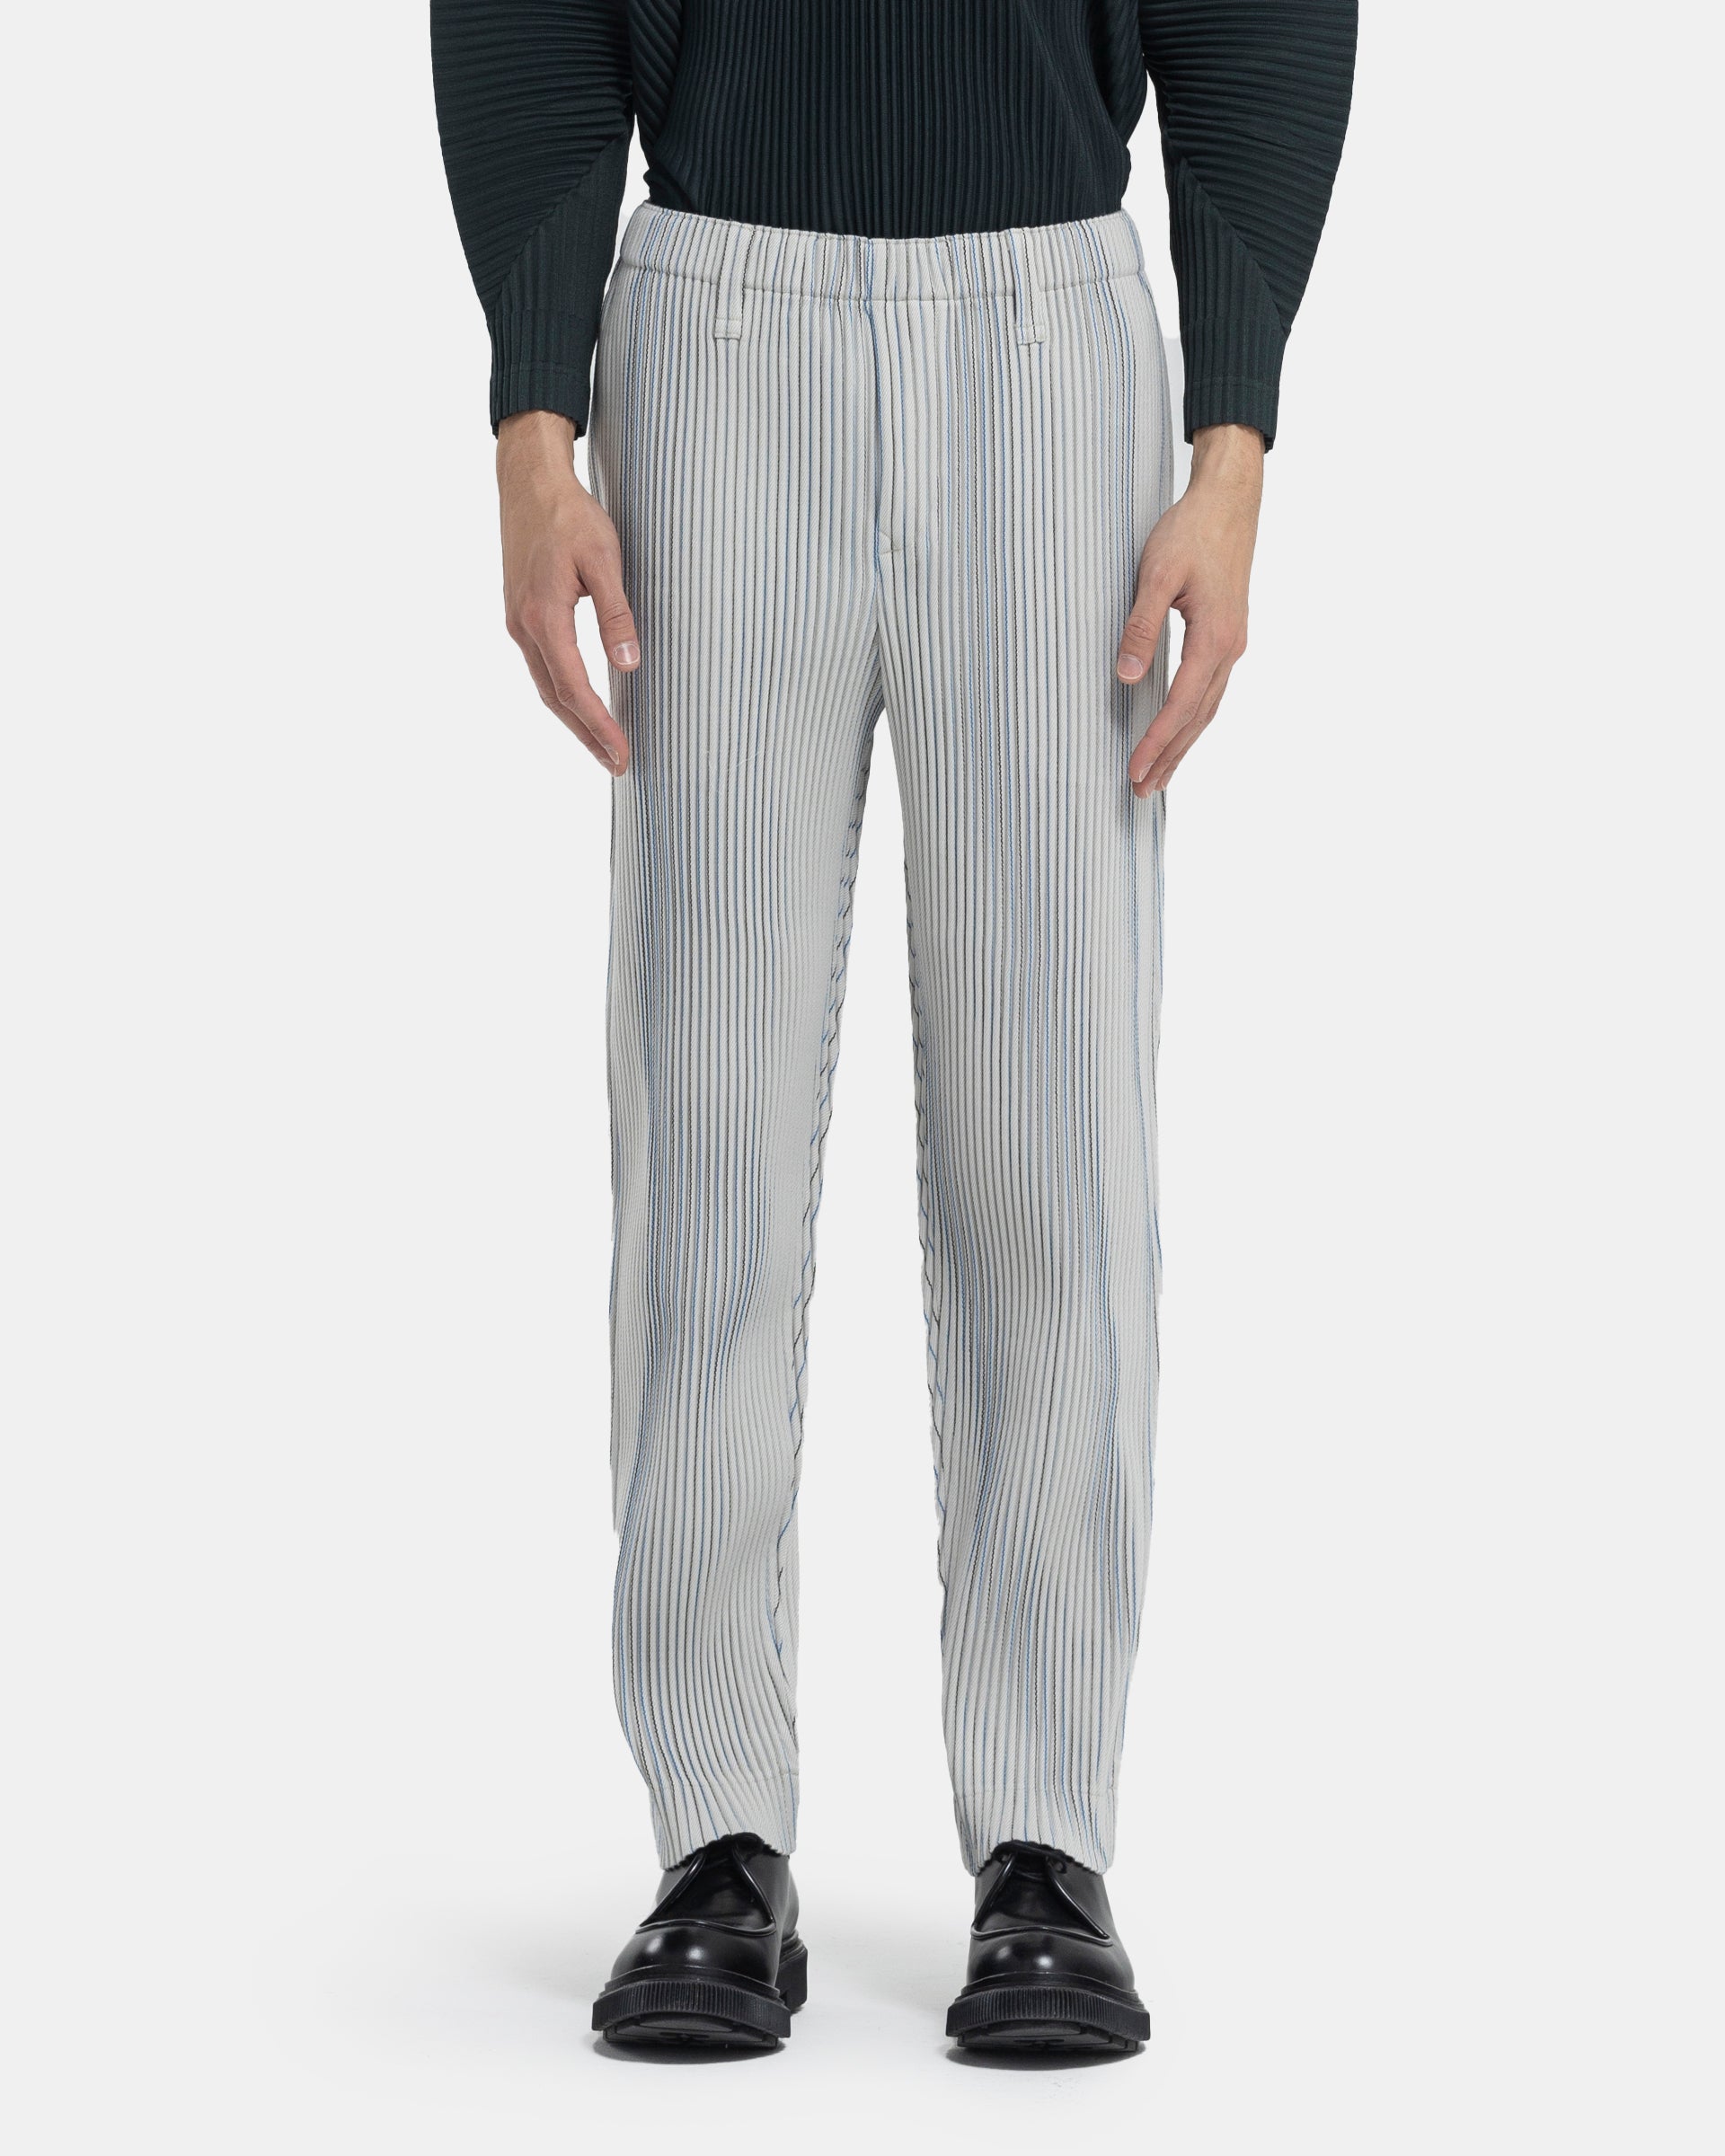 Tweed Pleated Pants in Ivory